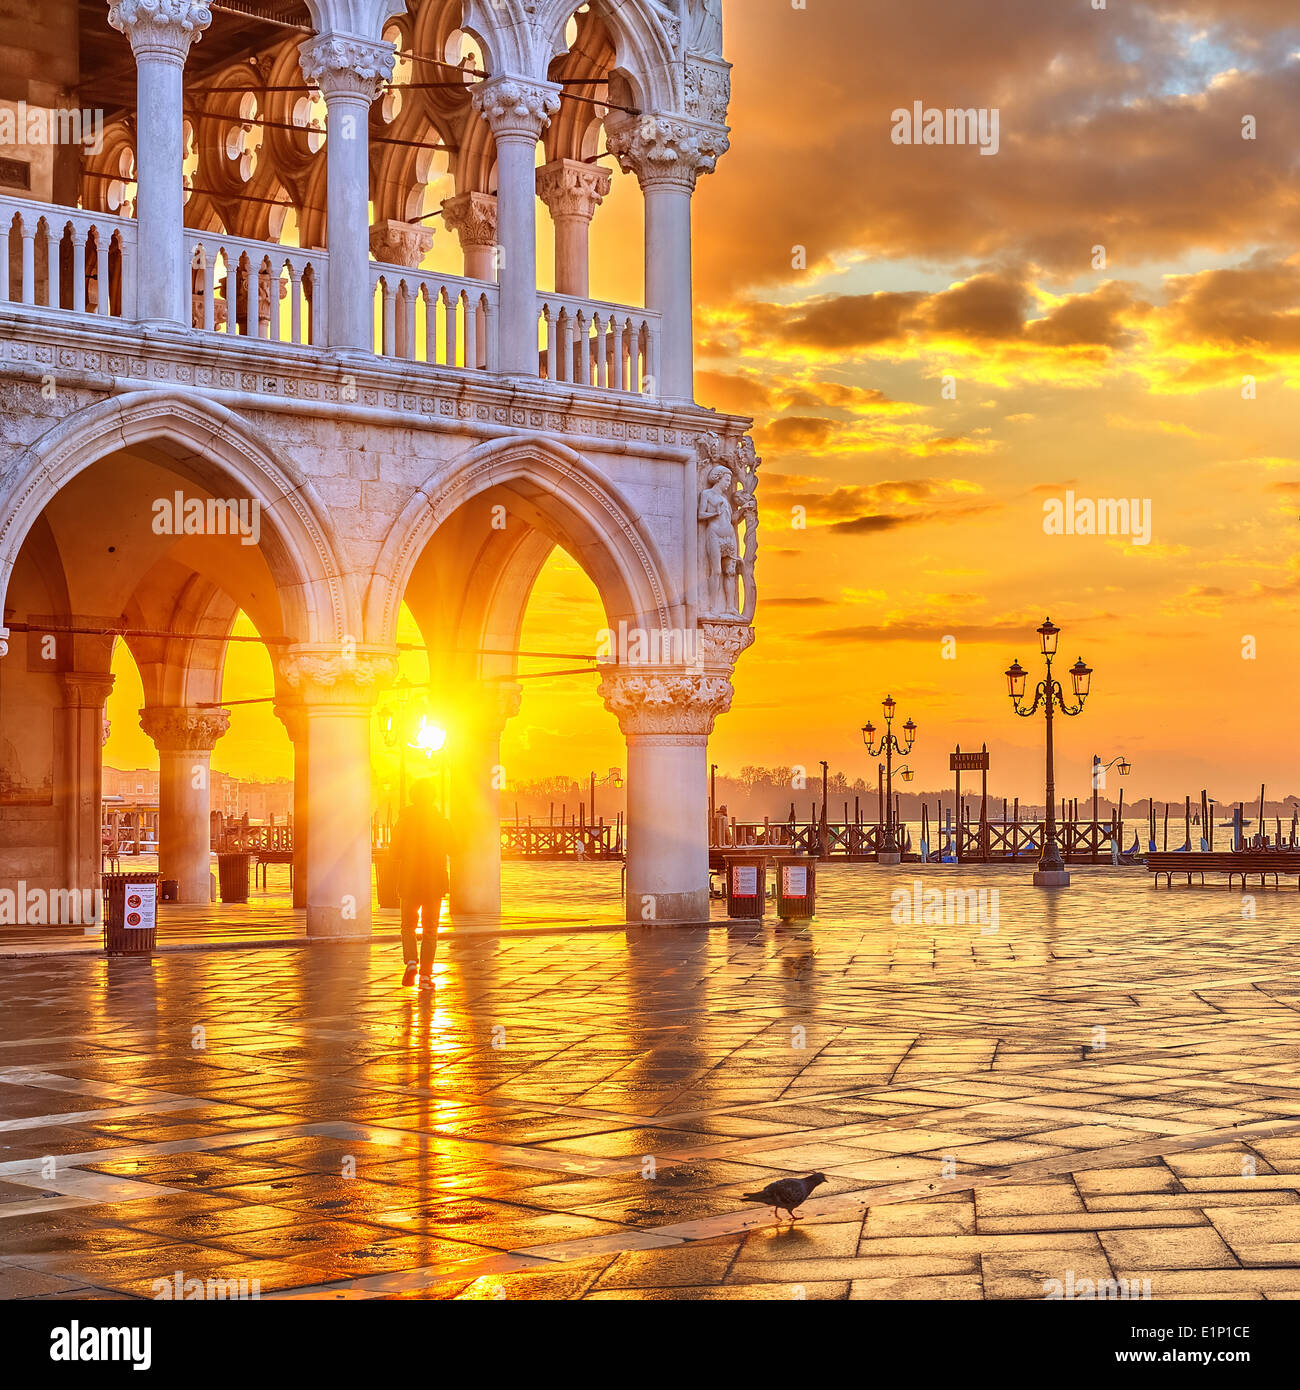 Palazzo venezia immagini e fotografie stock ad alta risoluzione - Alamy